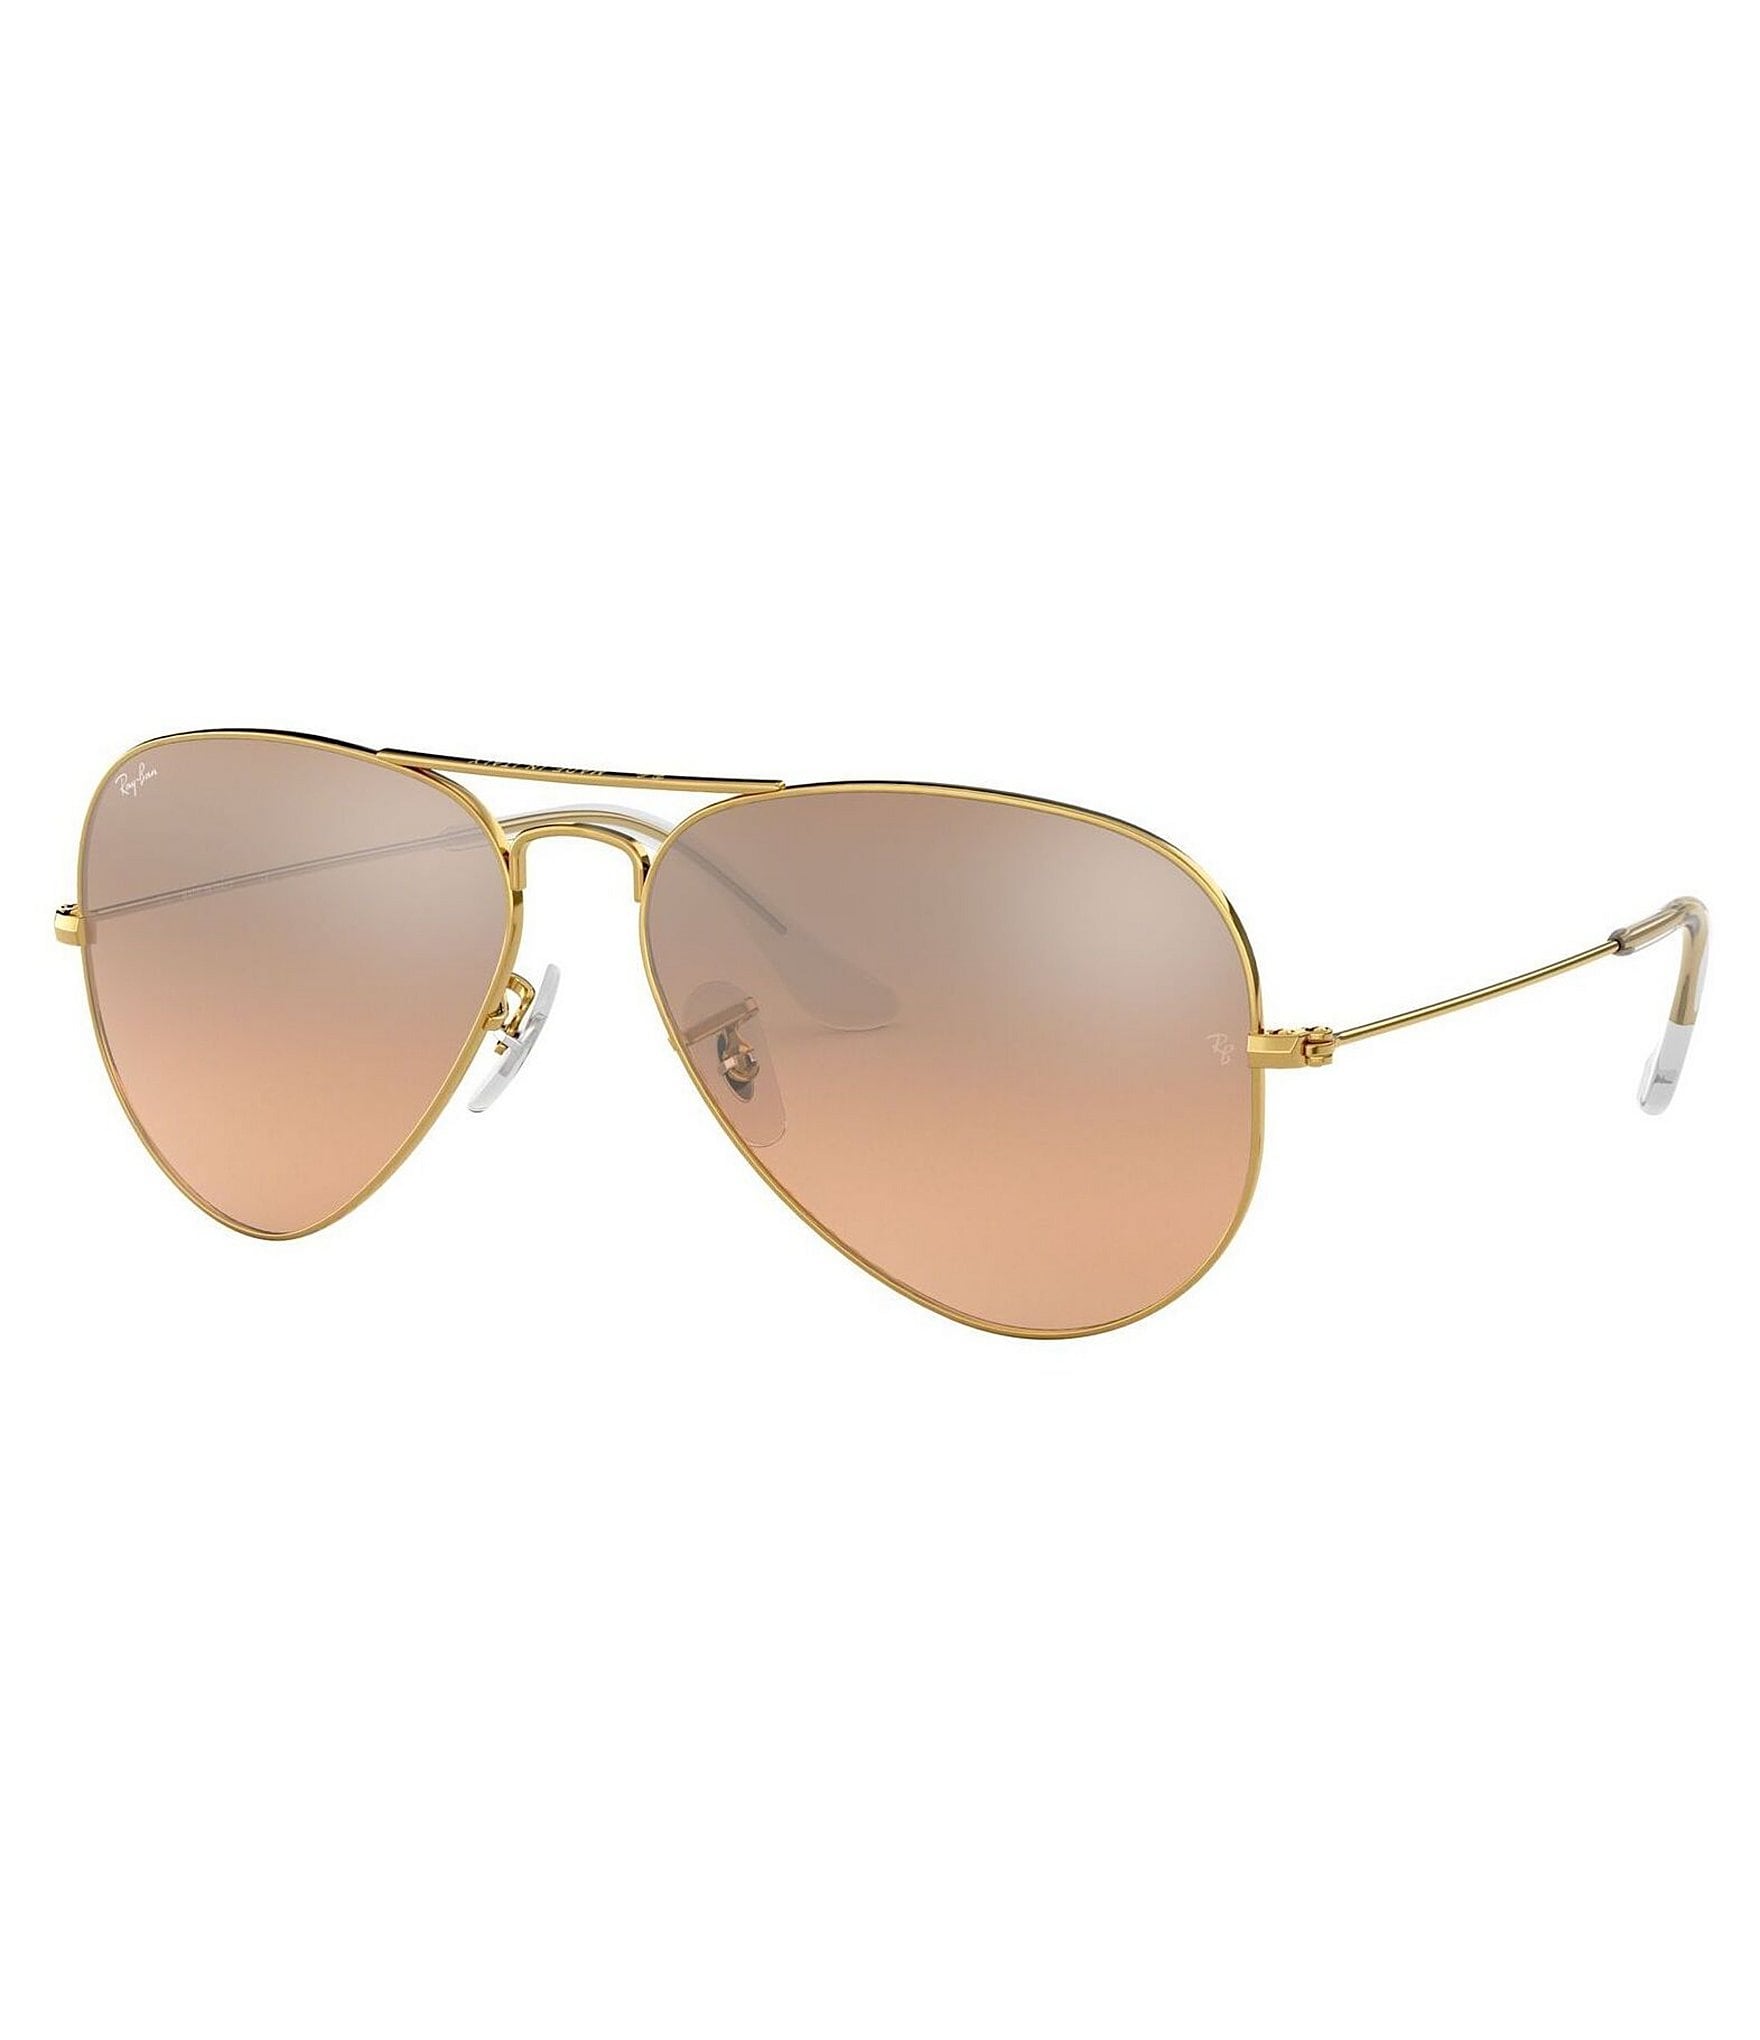 Ray-Ban Mirrored Aviator Sunglasses | Dillard's